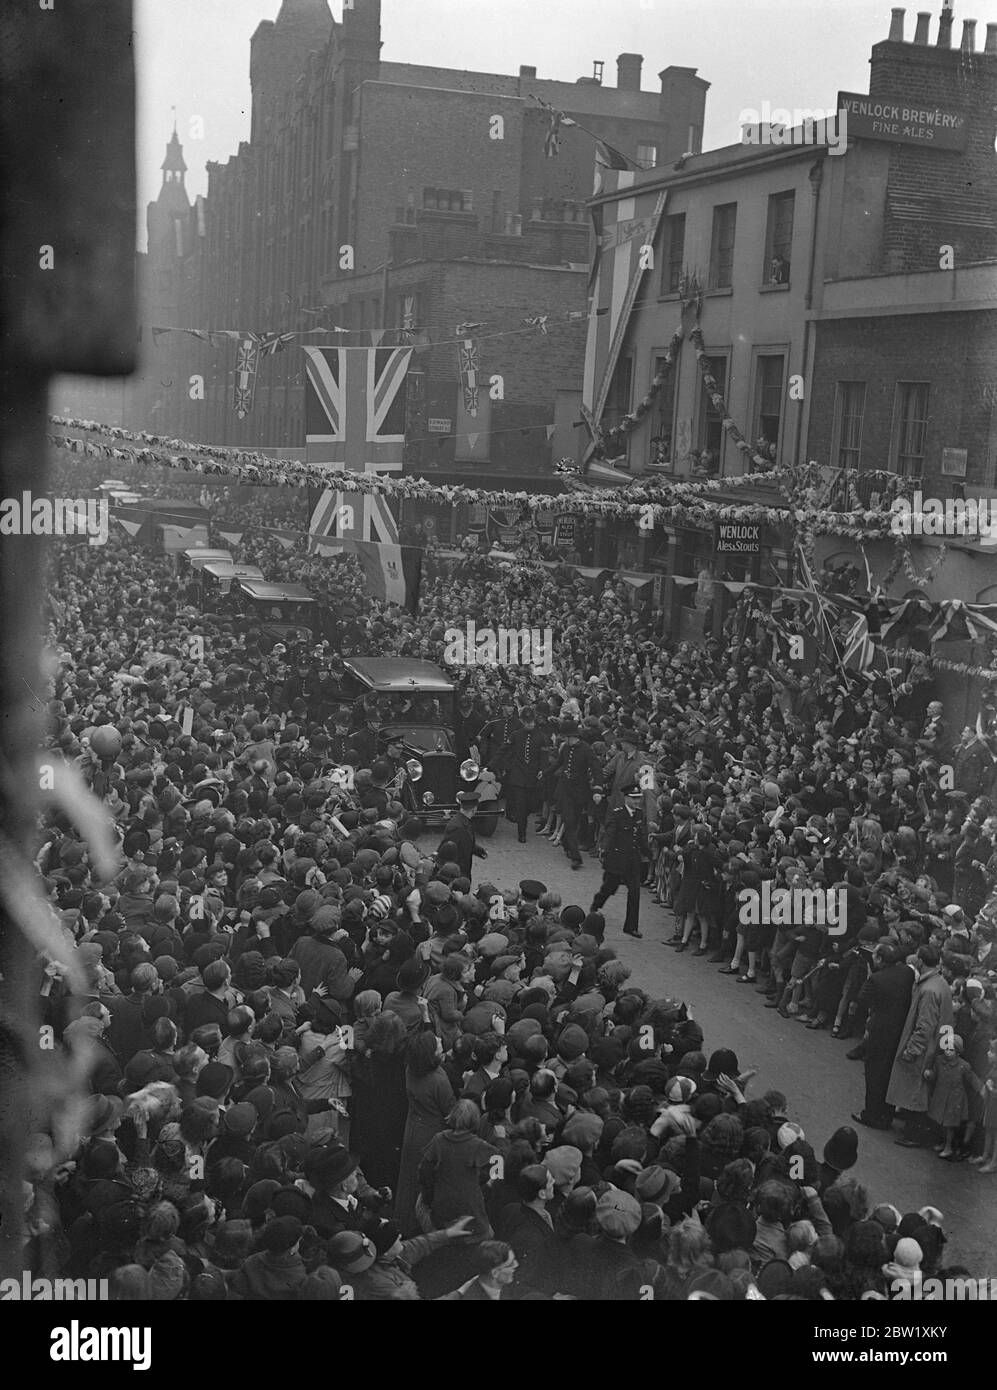 Modo della polizia per auto reale a Hoxton. Il giorno dopo la loro incoronazione, il Re e la Regina fecero un viaggio attraverso le strade decorate dei quartieri più poveri di Londra. Migliaia di persone si riunirono per salutarli e finirono in luoghi in cui la polizia doveva forzare la strada attraverso la folla per la Royal Car. Foto spettacoli: La polizia cerca di forzare un modo per la Royal auto attraverso la folla eccitato a Hoxton. 13 maggio 1937 Foto Stock